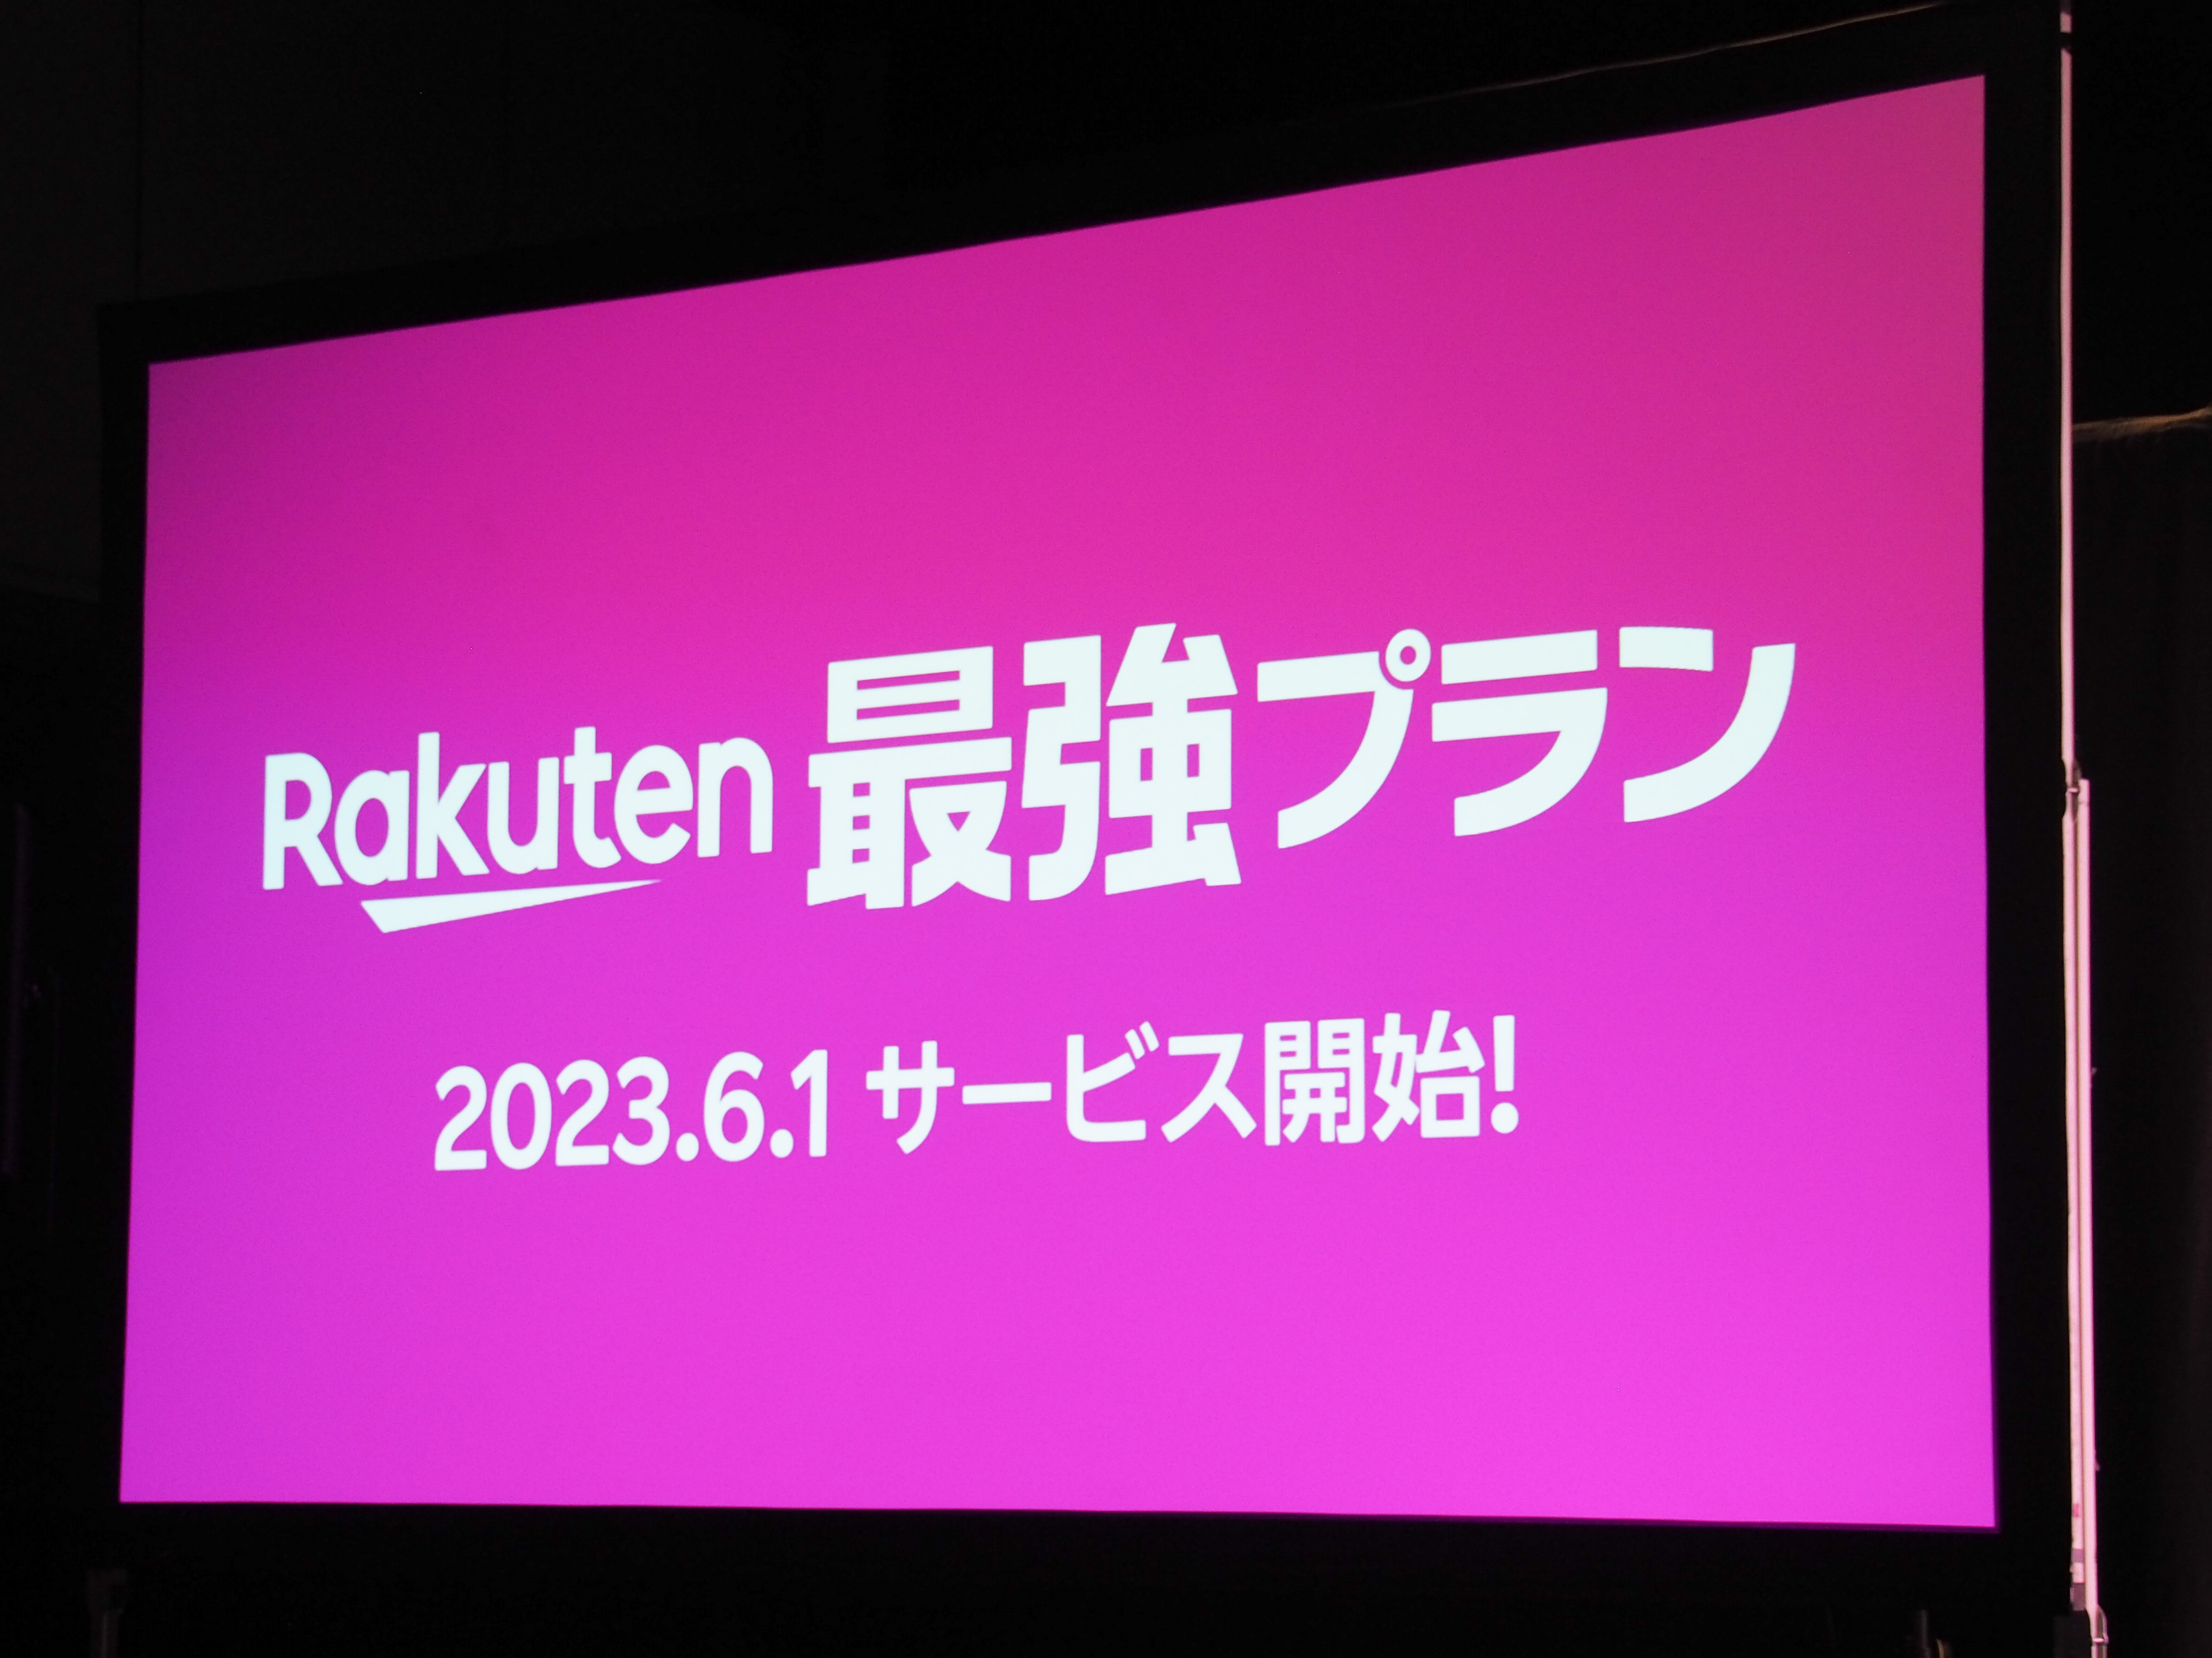 楽天モバイルが5月12日、新たに打ち出した「Rakuten最強プラン」。従来プランと料金や基本的な仕組みは変わらないものの、1つ大きな違いがある